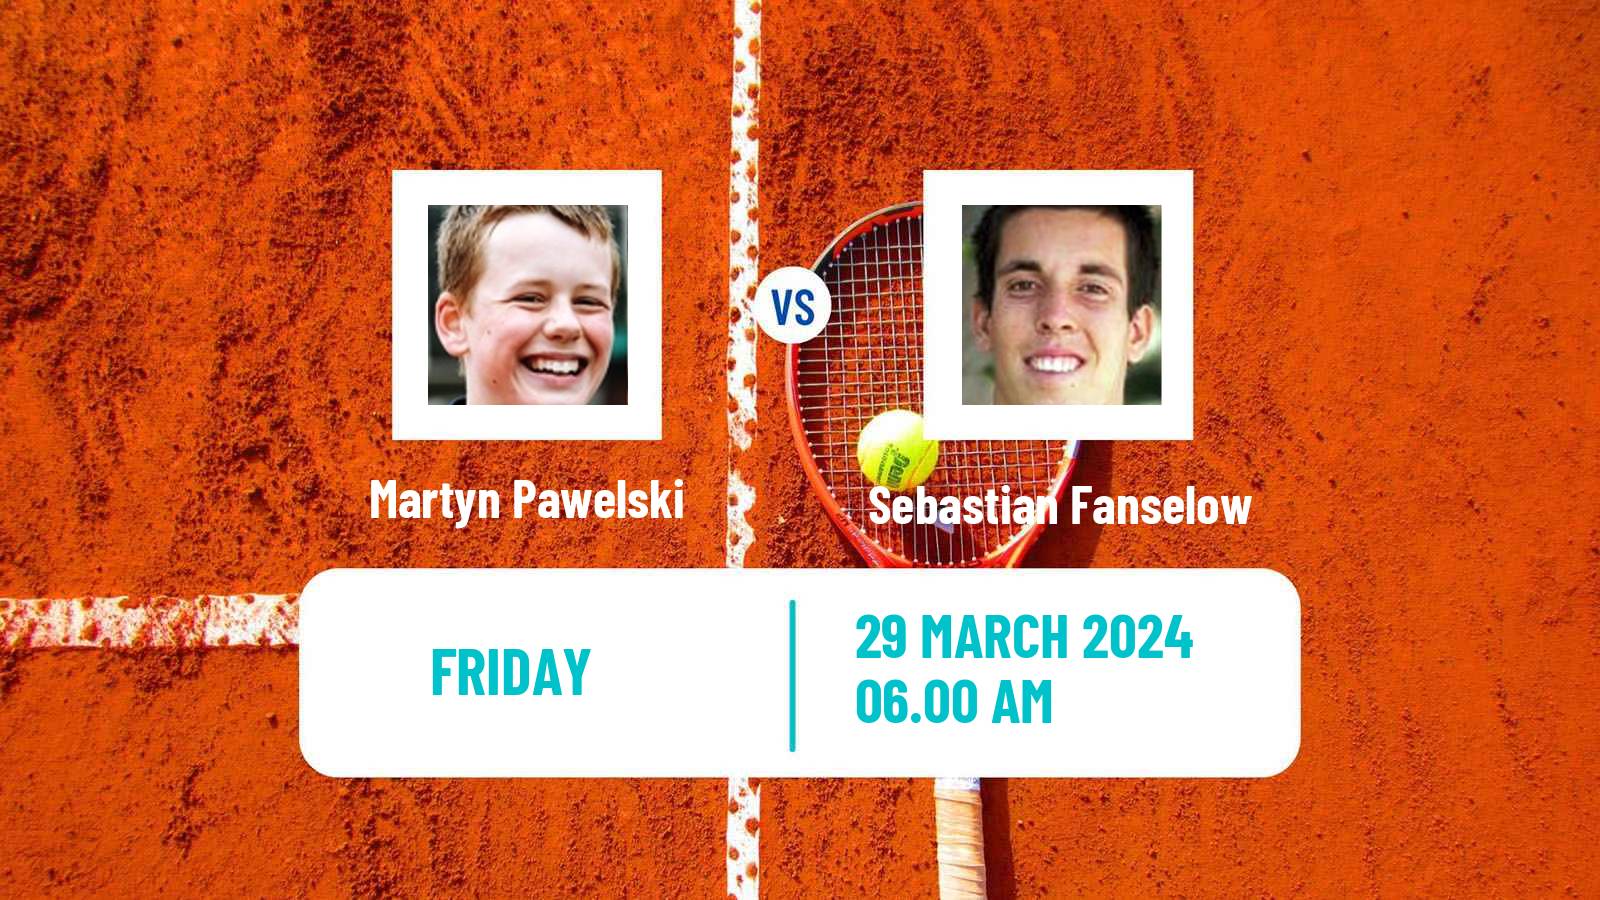 Tennis ITF M25 Trnava Men Martyn Pawelski - Sebastian Fanselow